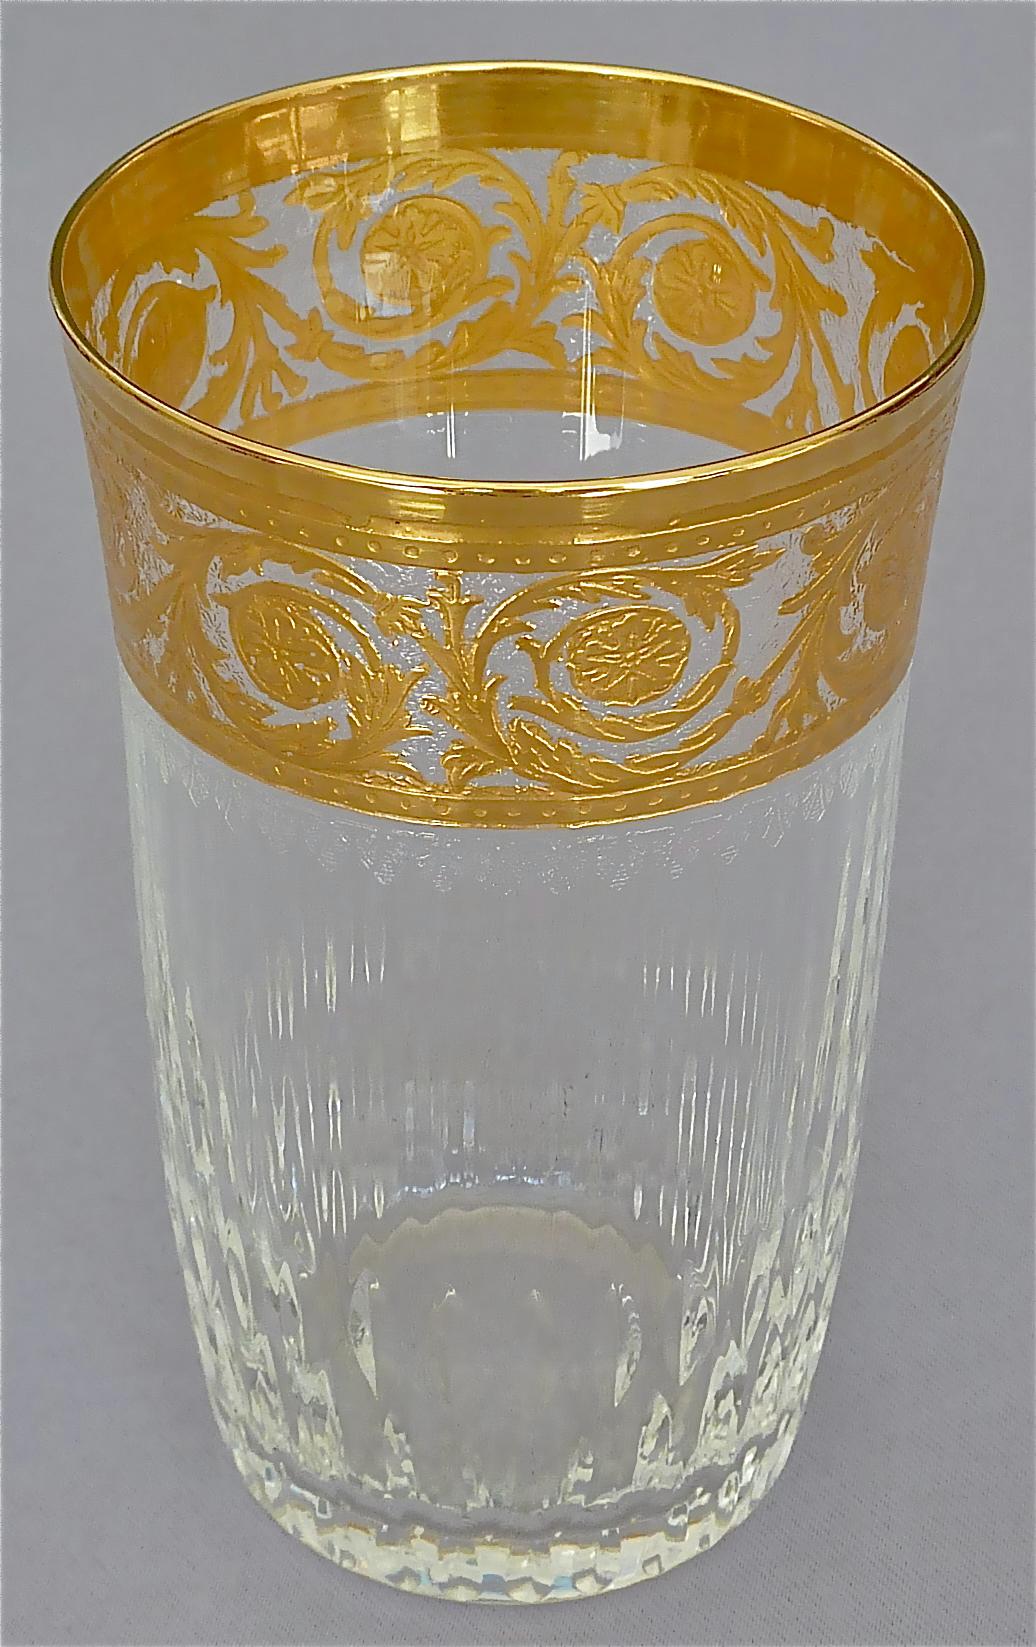 24 Saint Louis-Wassergläser aus vergoldetem Kristall, Champagner, Rot, Weiß und Weiß, Distel, 1950er Jahre (Französisch)